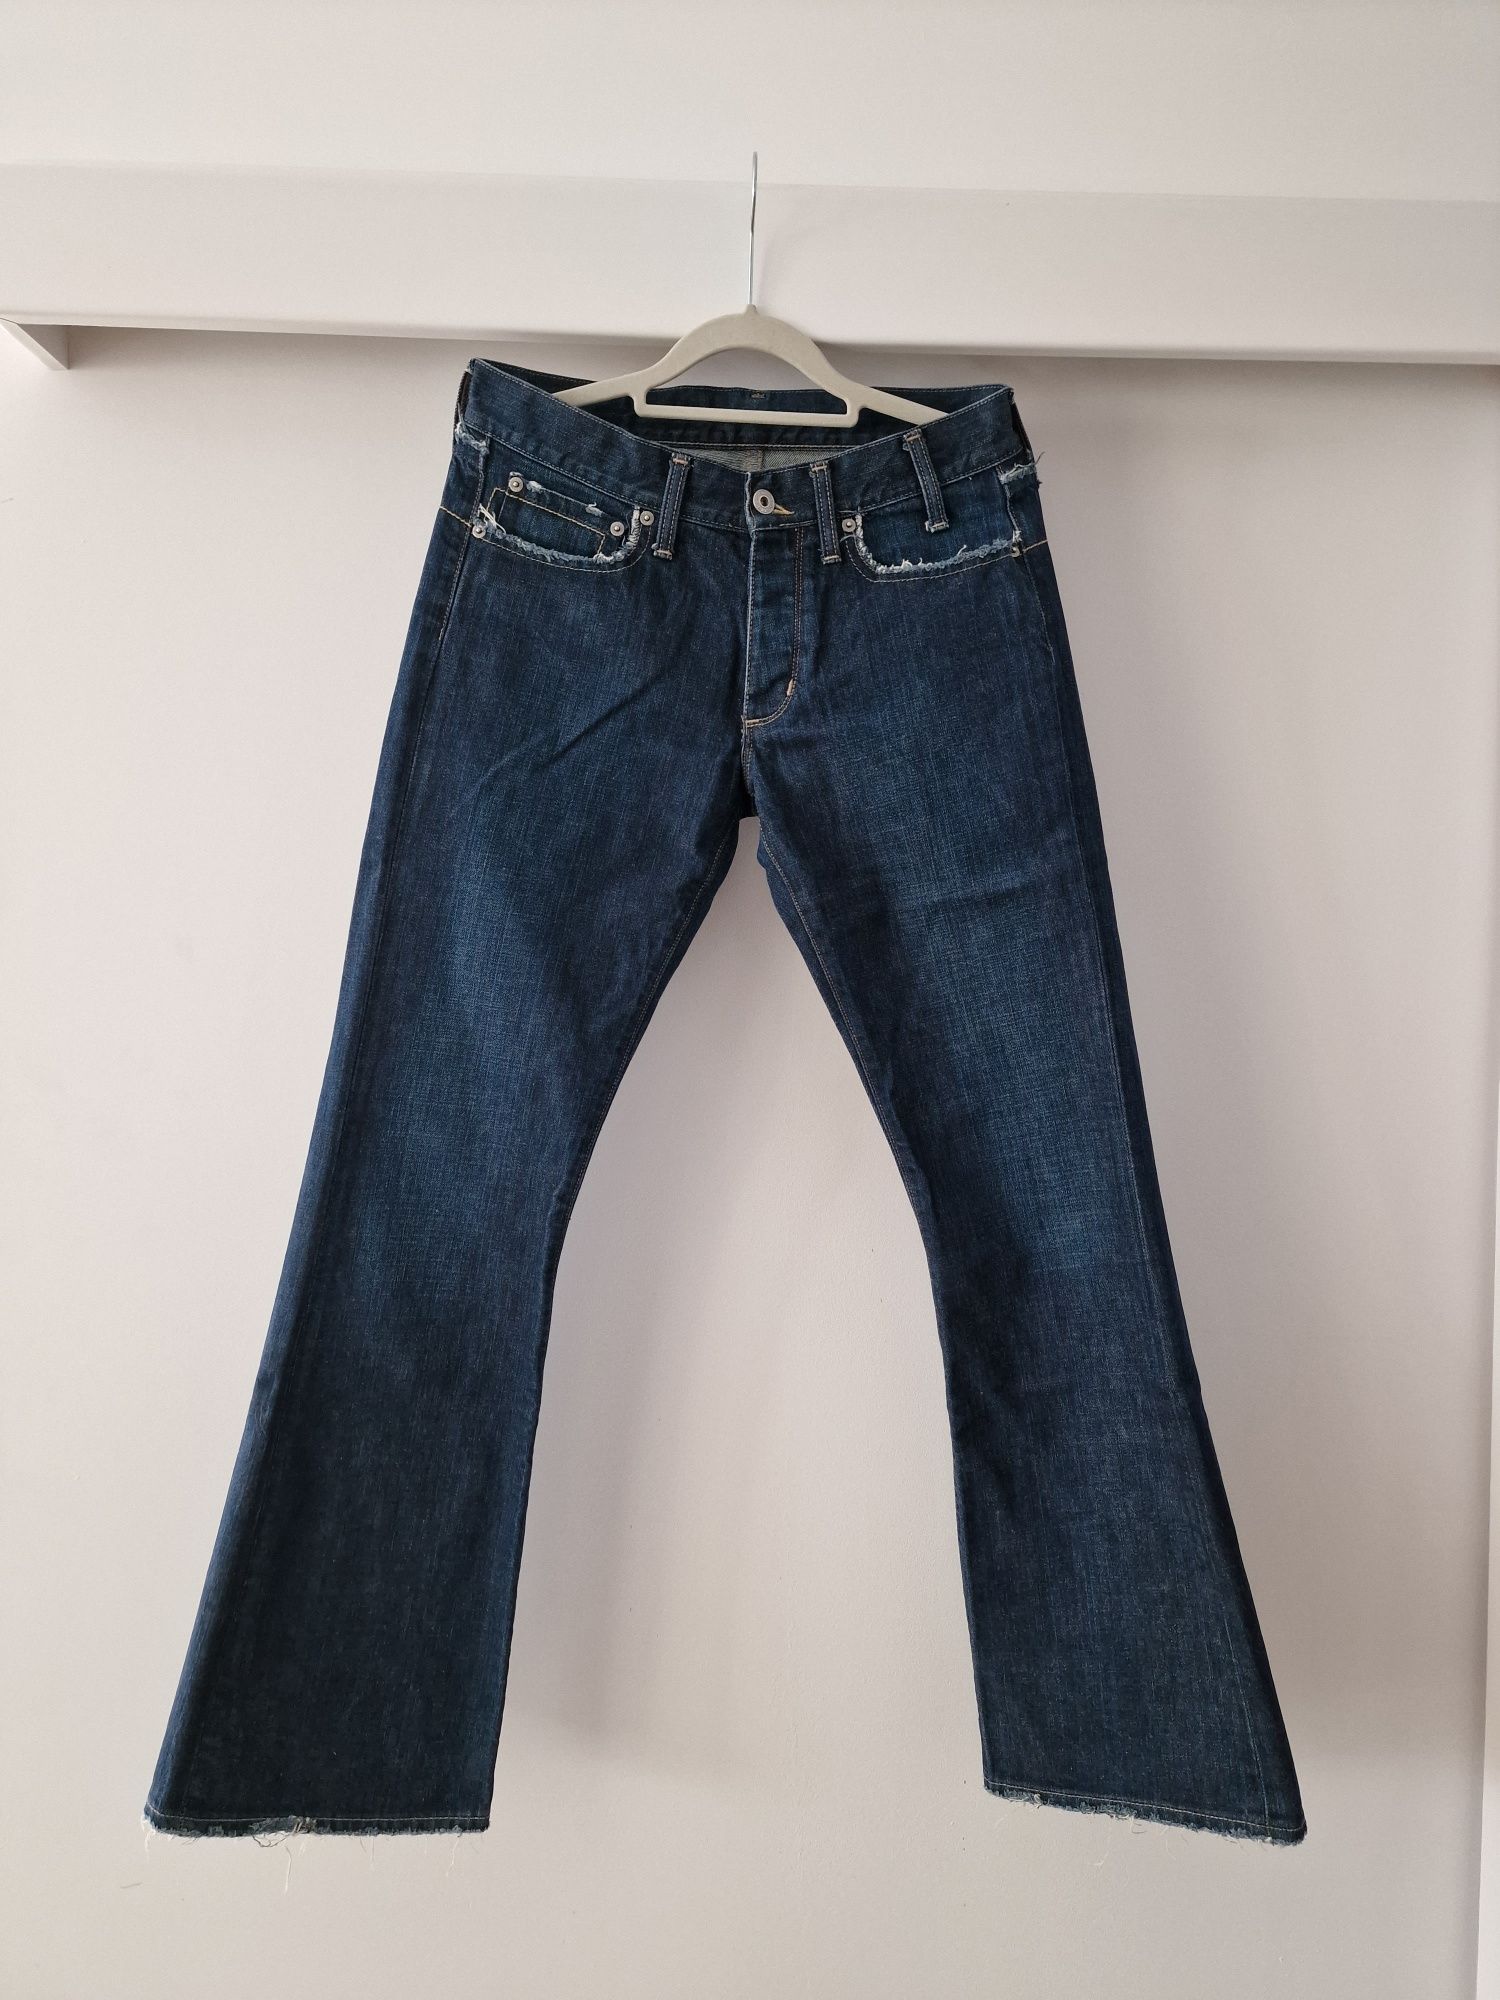 Spodnie jeansy G- star RAW roz. 30x 32